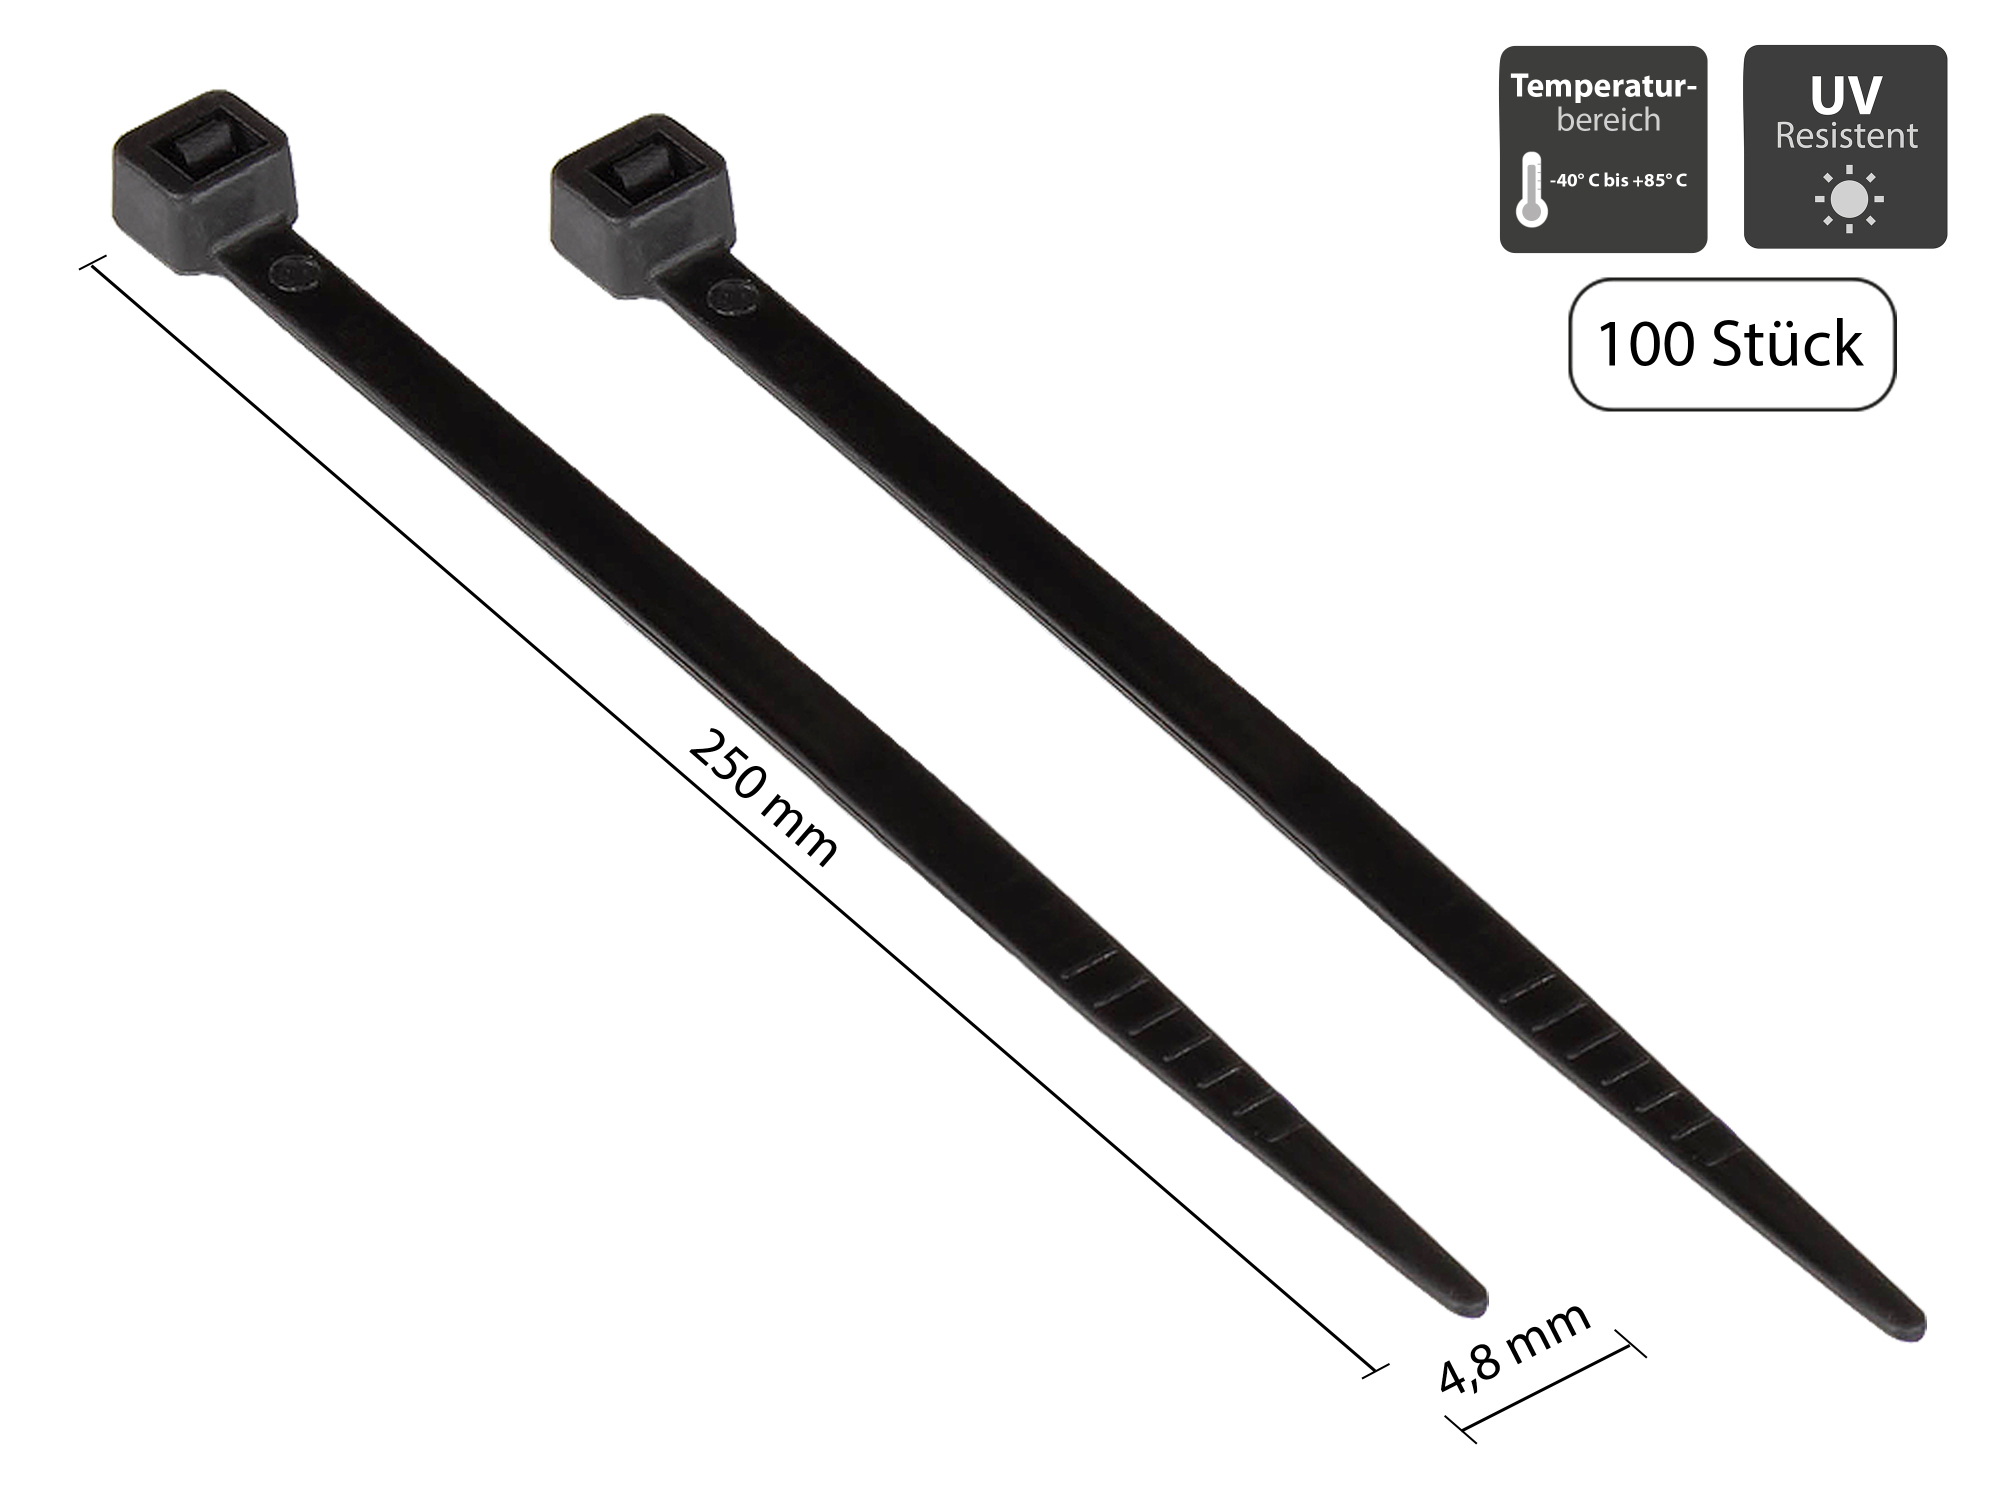 Kabelbinder 250 mm x 4,8 mm, schwarz, UL, UV-resistent, -40 °C bis +85 °C, 100 Stück